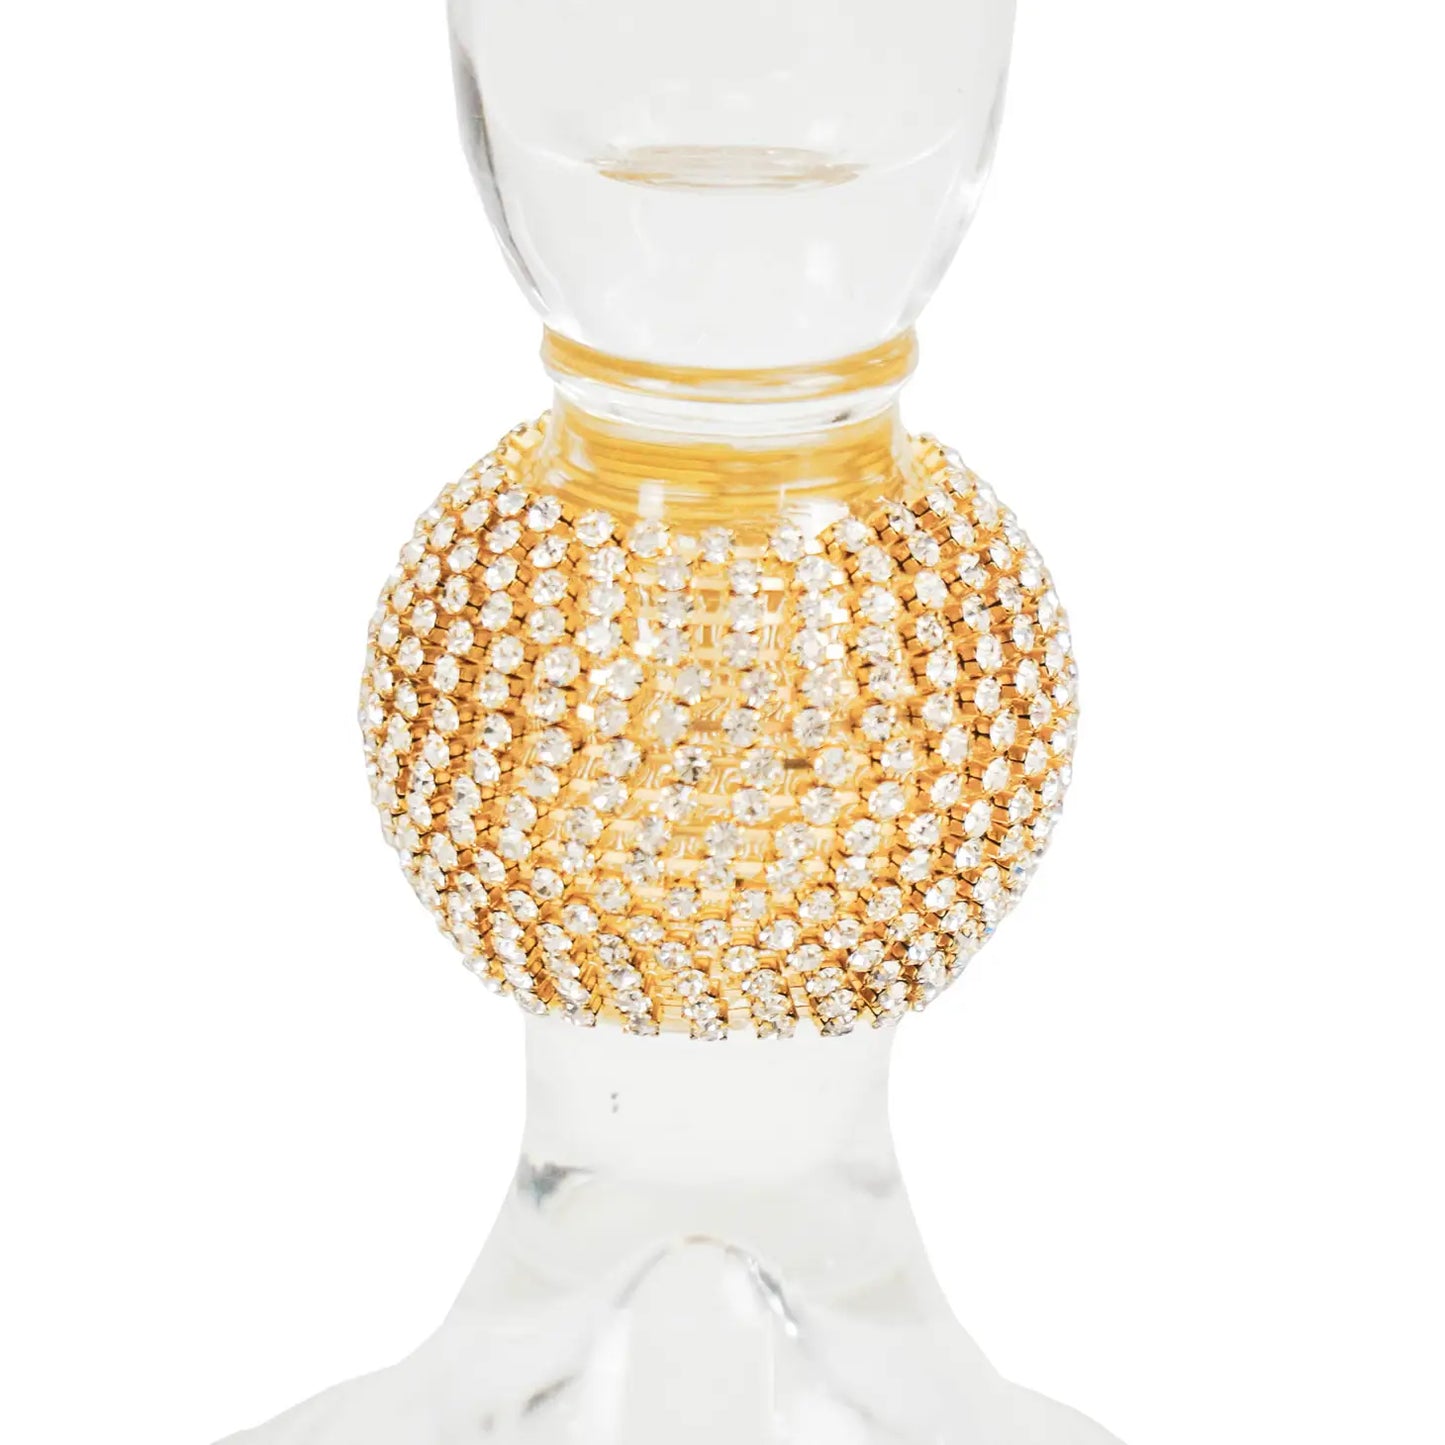 Kerzenhalter aus Glas, Gold, 8,5 x 14 cm